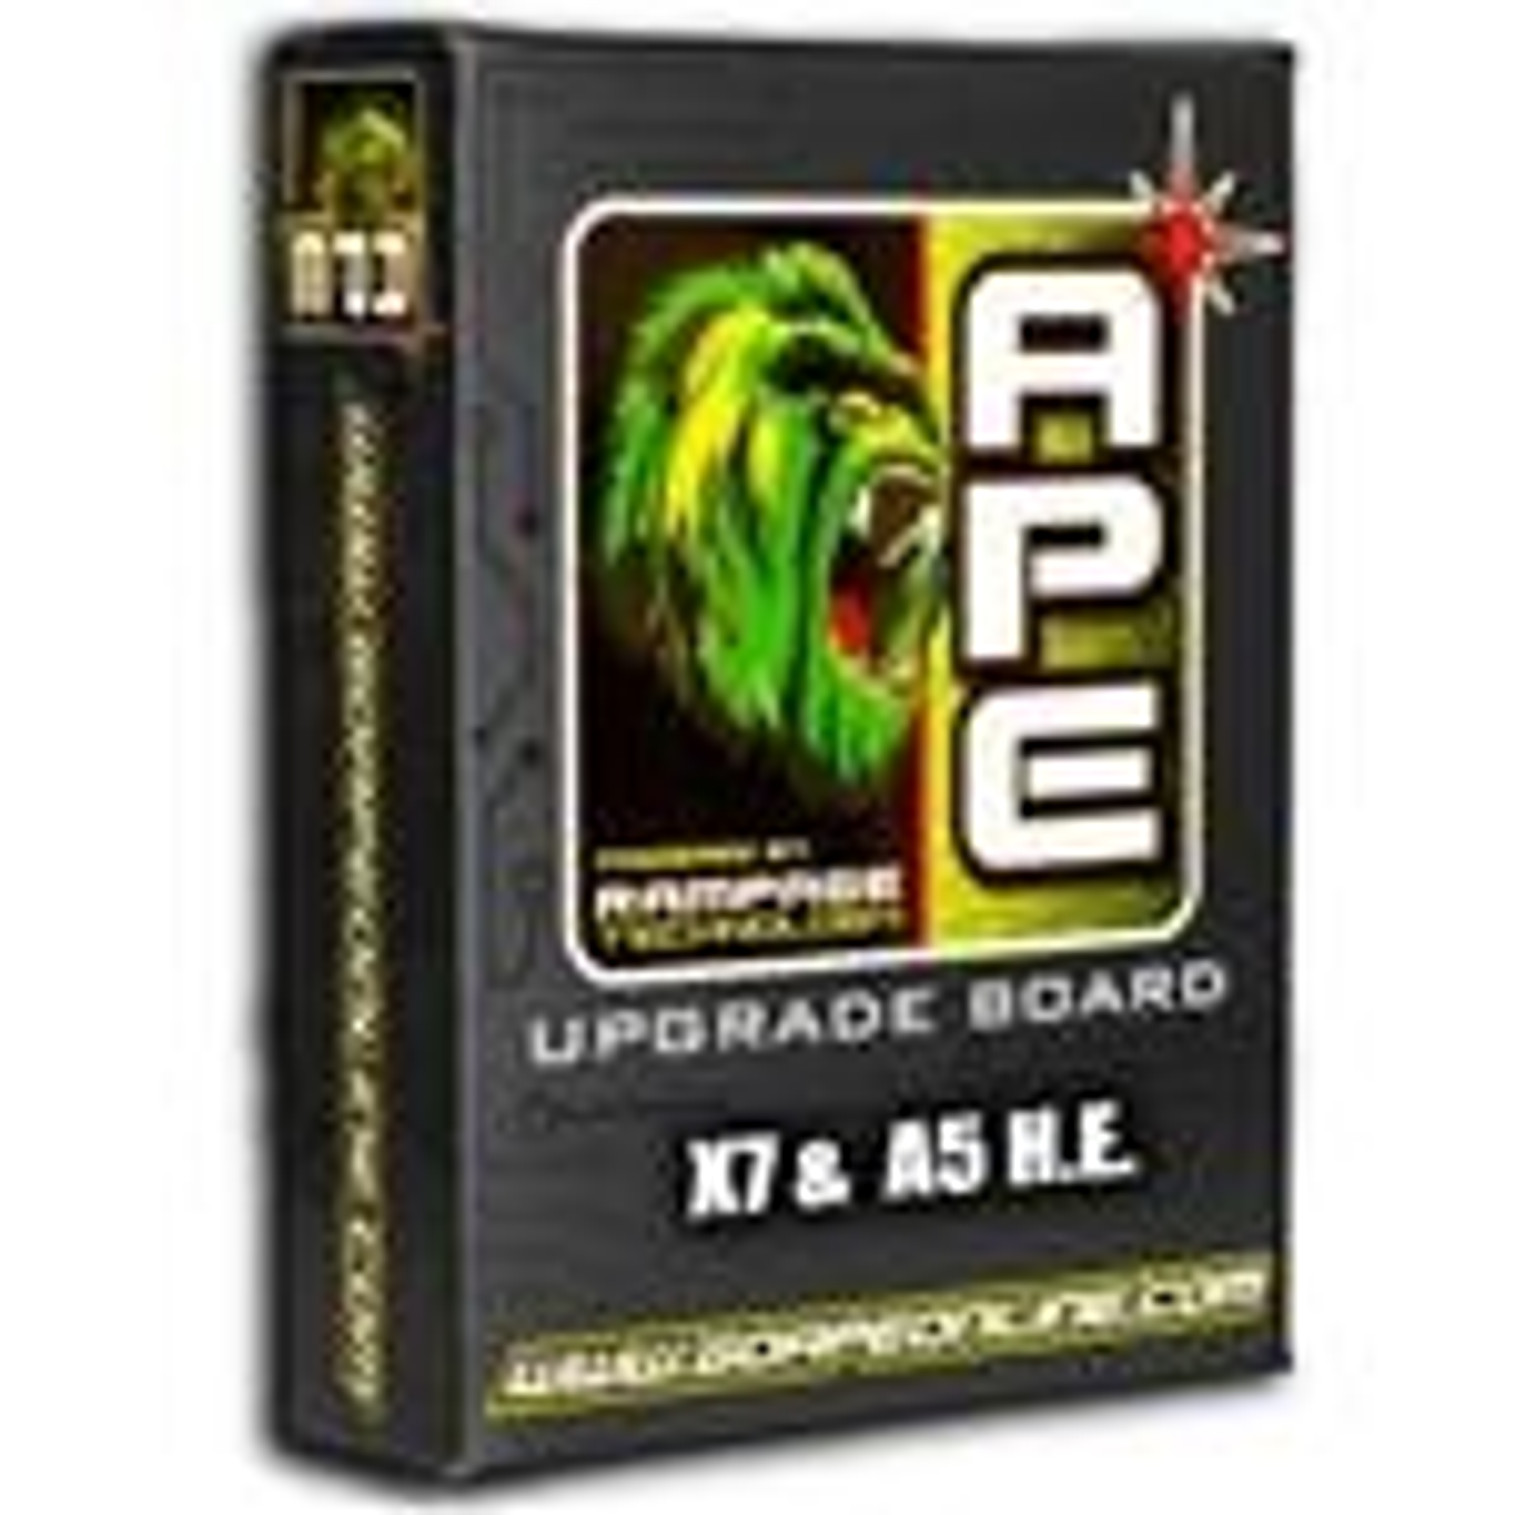 APE Rampage Board w/PowerShot Solenoid - X7 & A5 H.E.